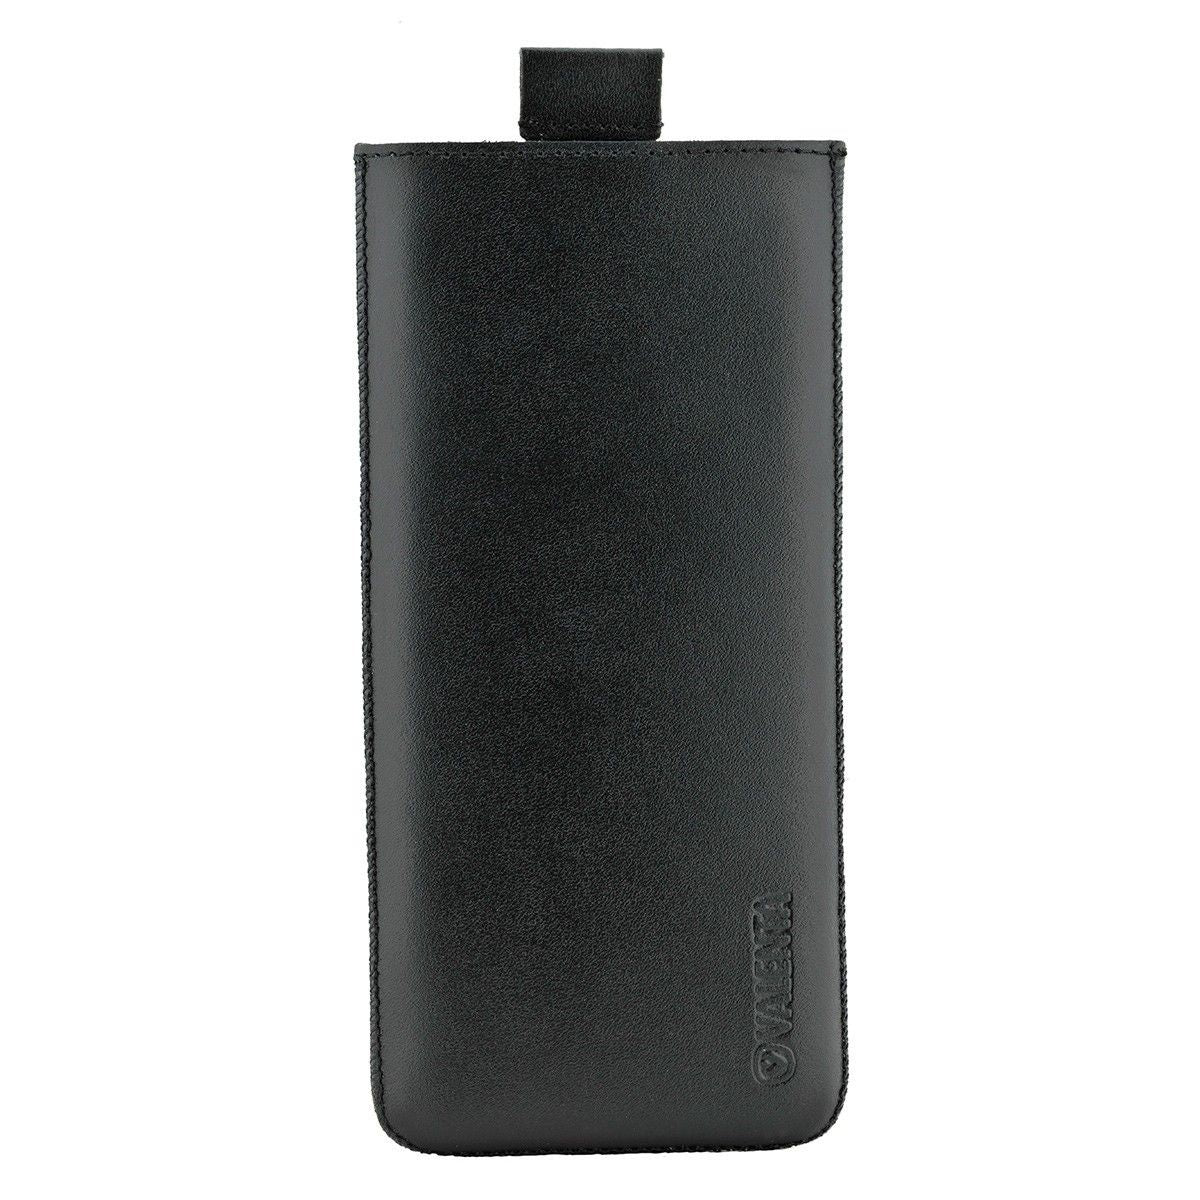  Einschubhülle Pocket Classic Schwarz 44 - iPhone 11 / XR - H155 x B76 x D10